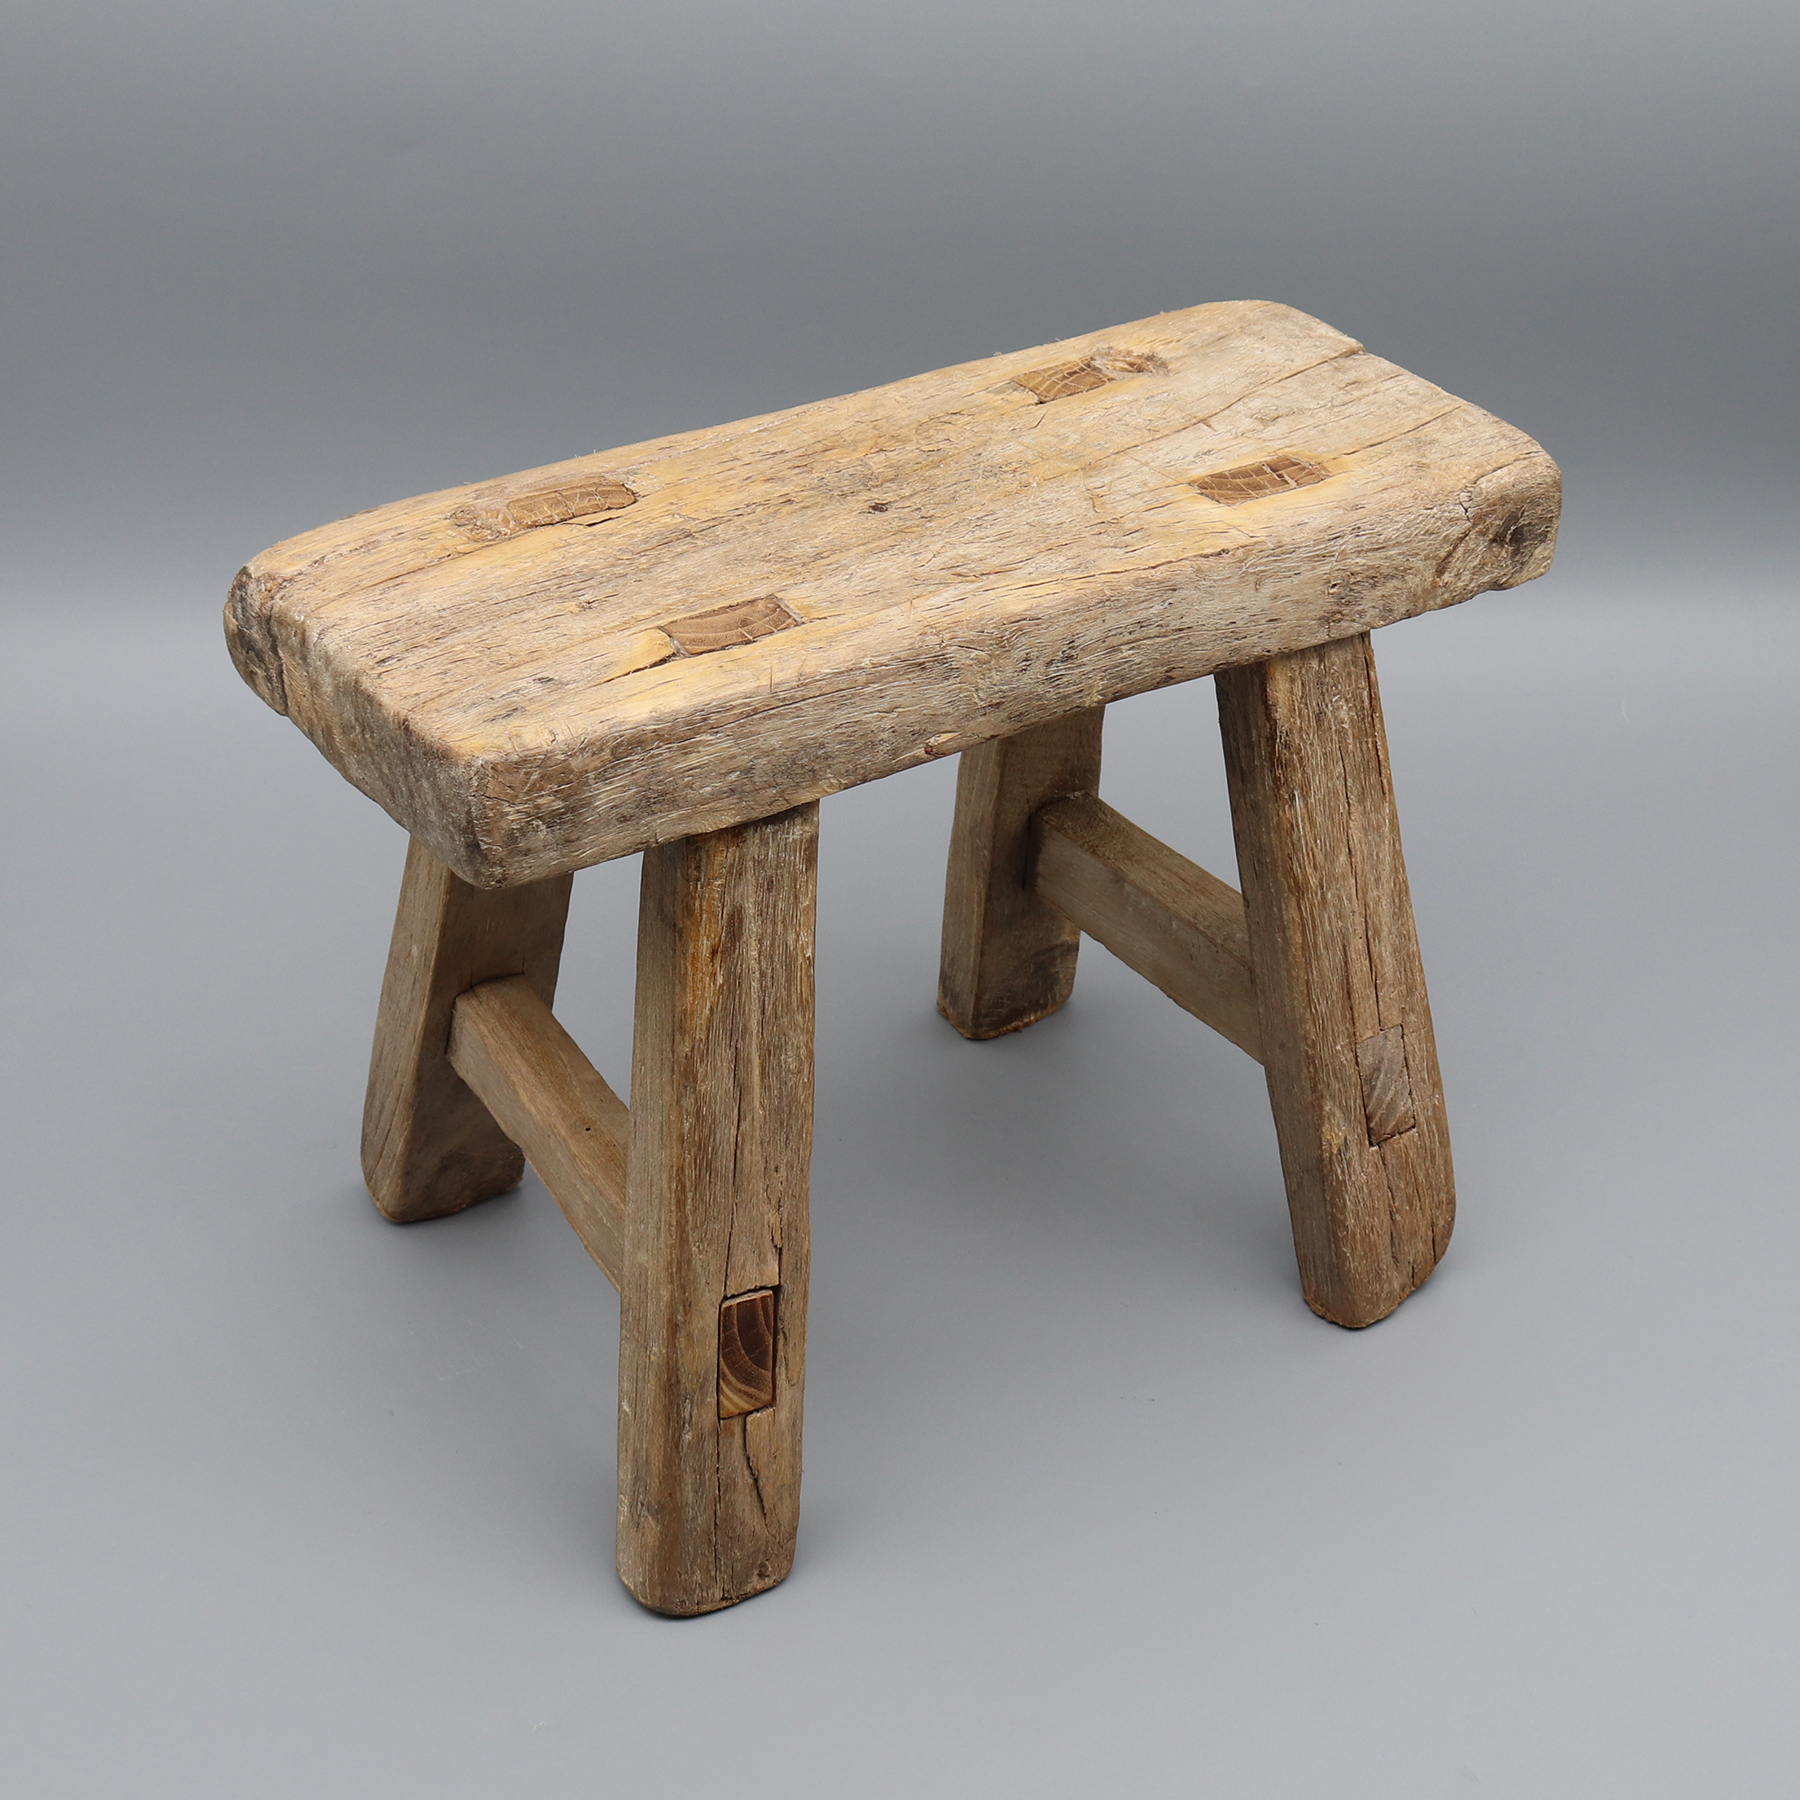 Sgabello antico in legno, snodo a tenone e mortasa, tavolino, supporto per piante, legno massello